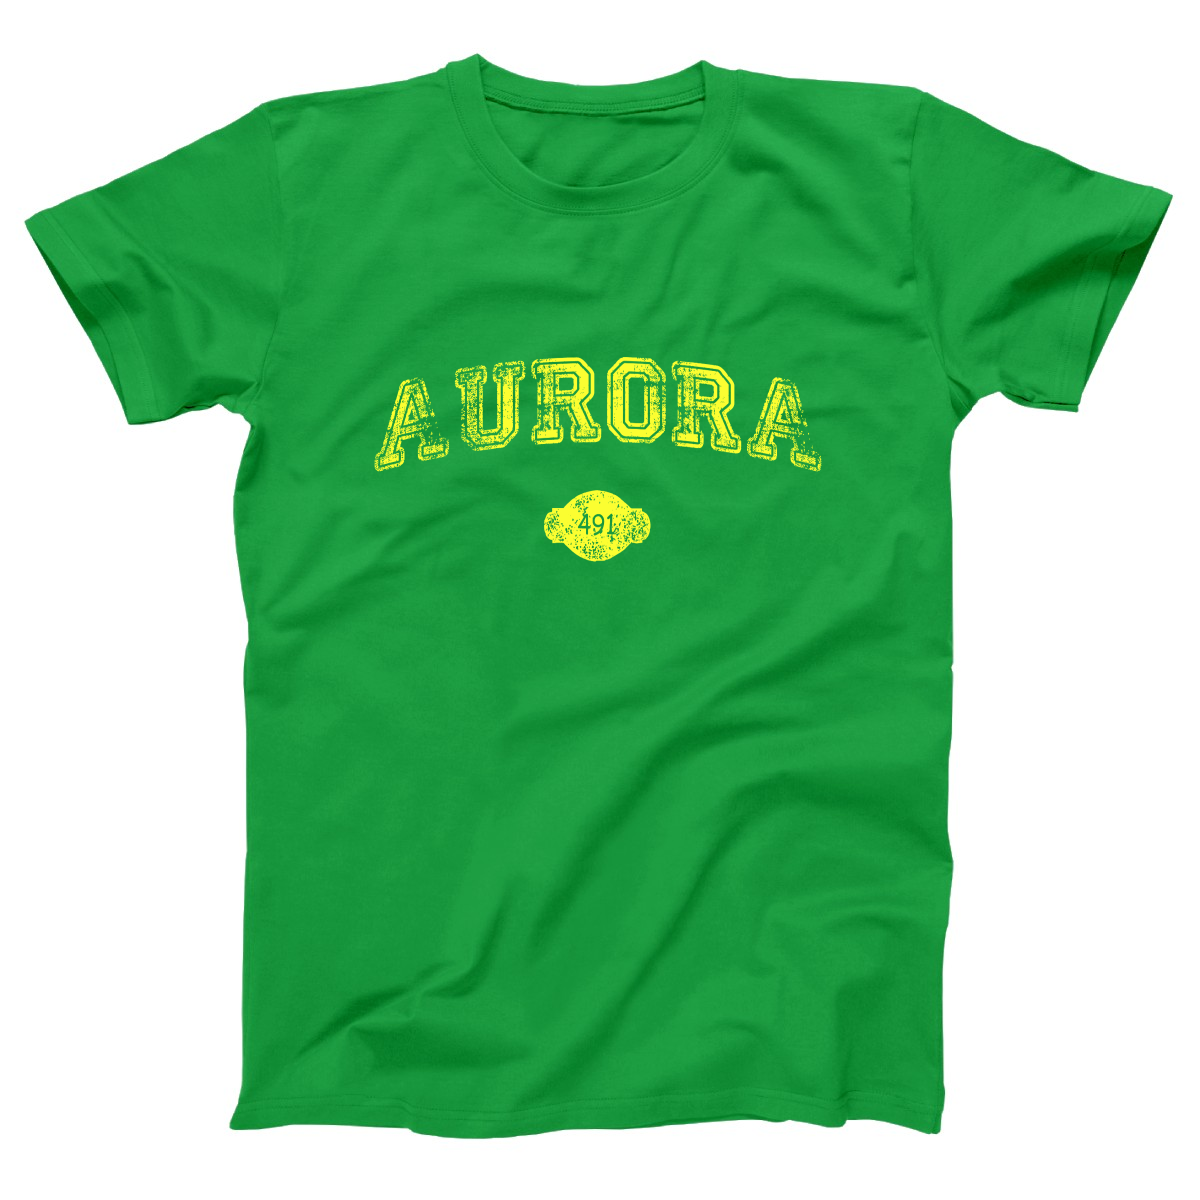 Aurora 1891 Represent Women's T-shirt | Green